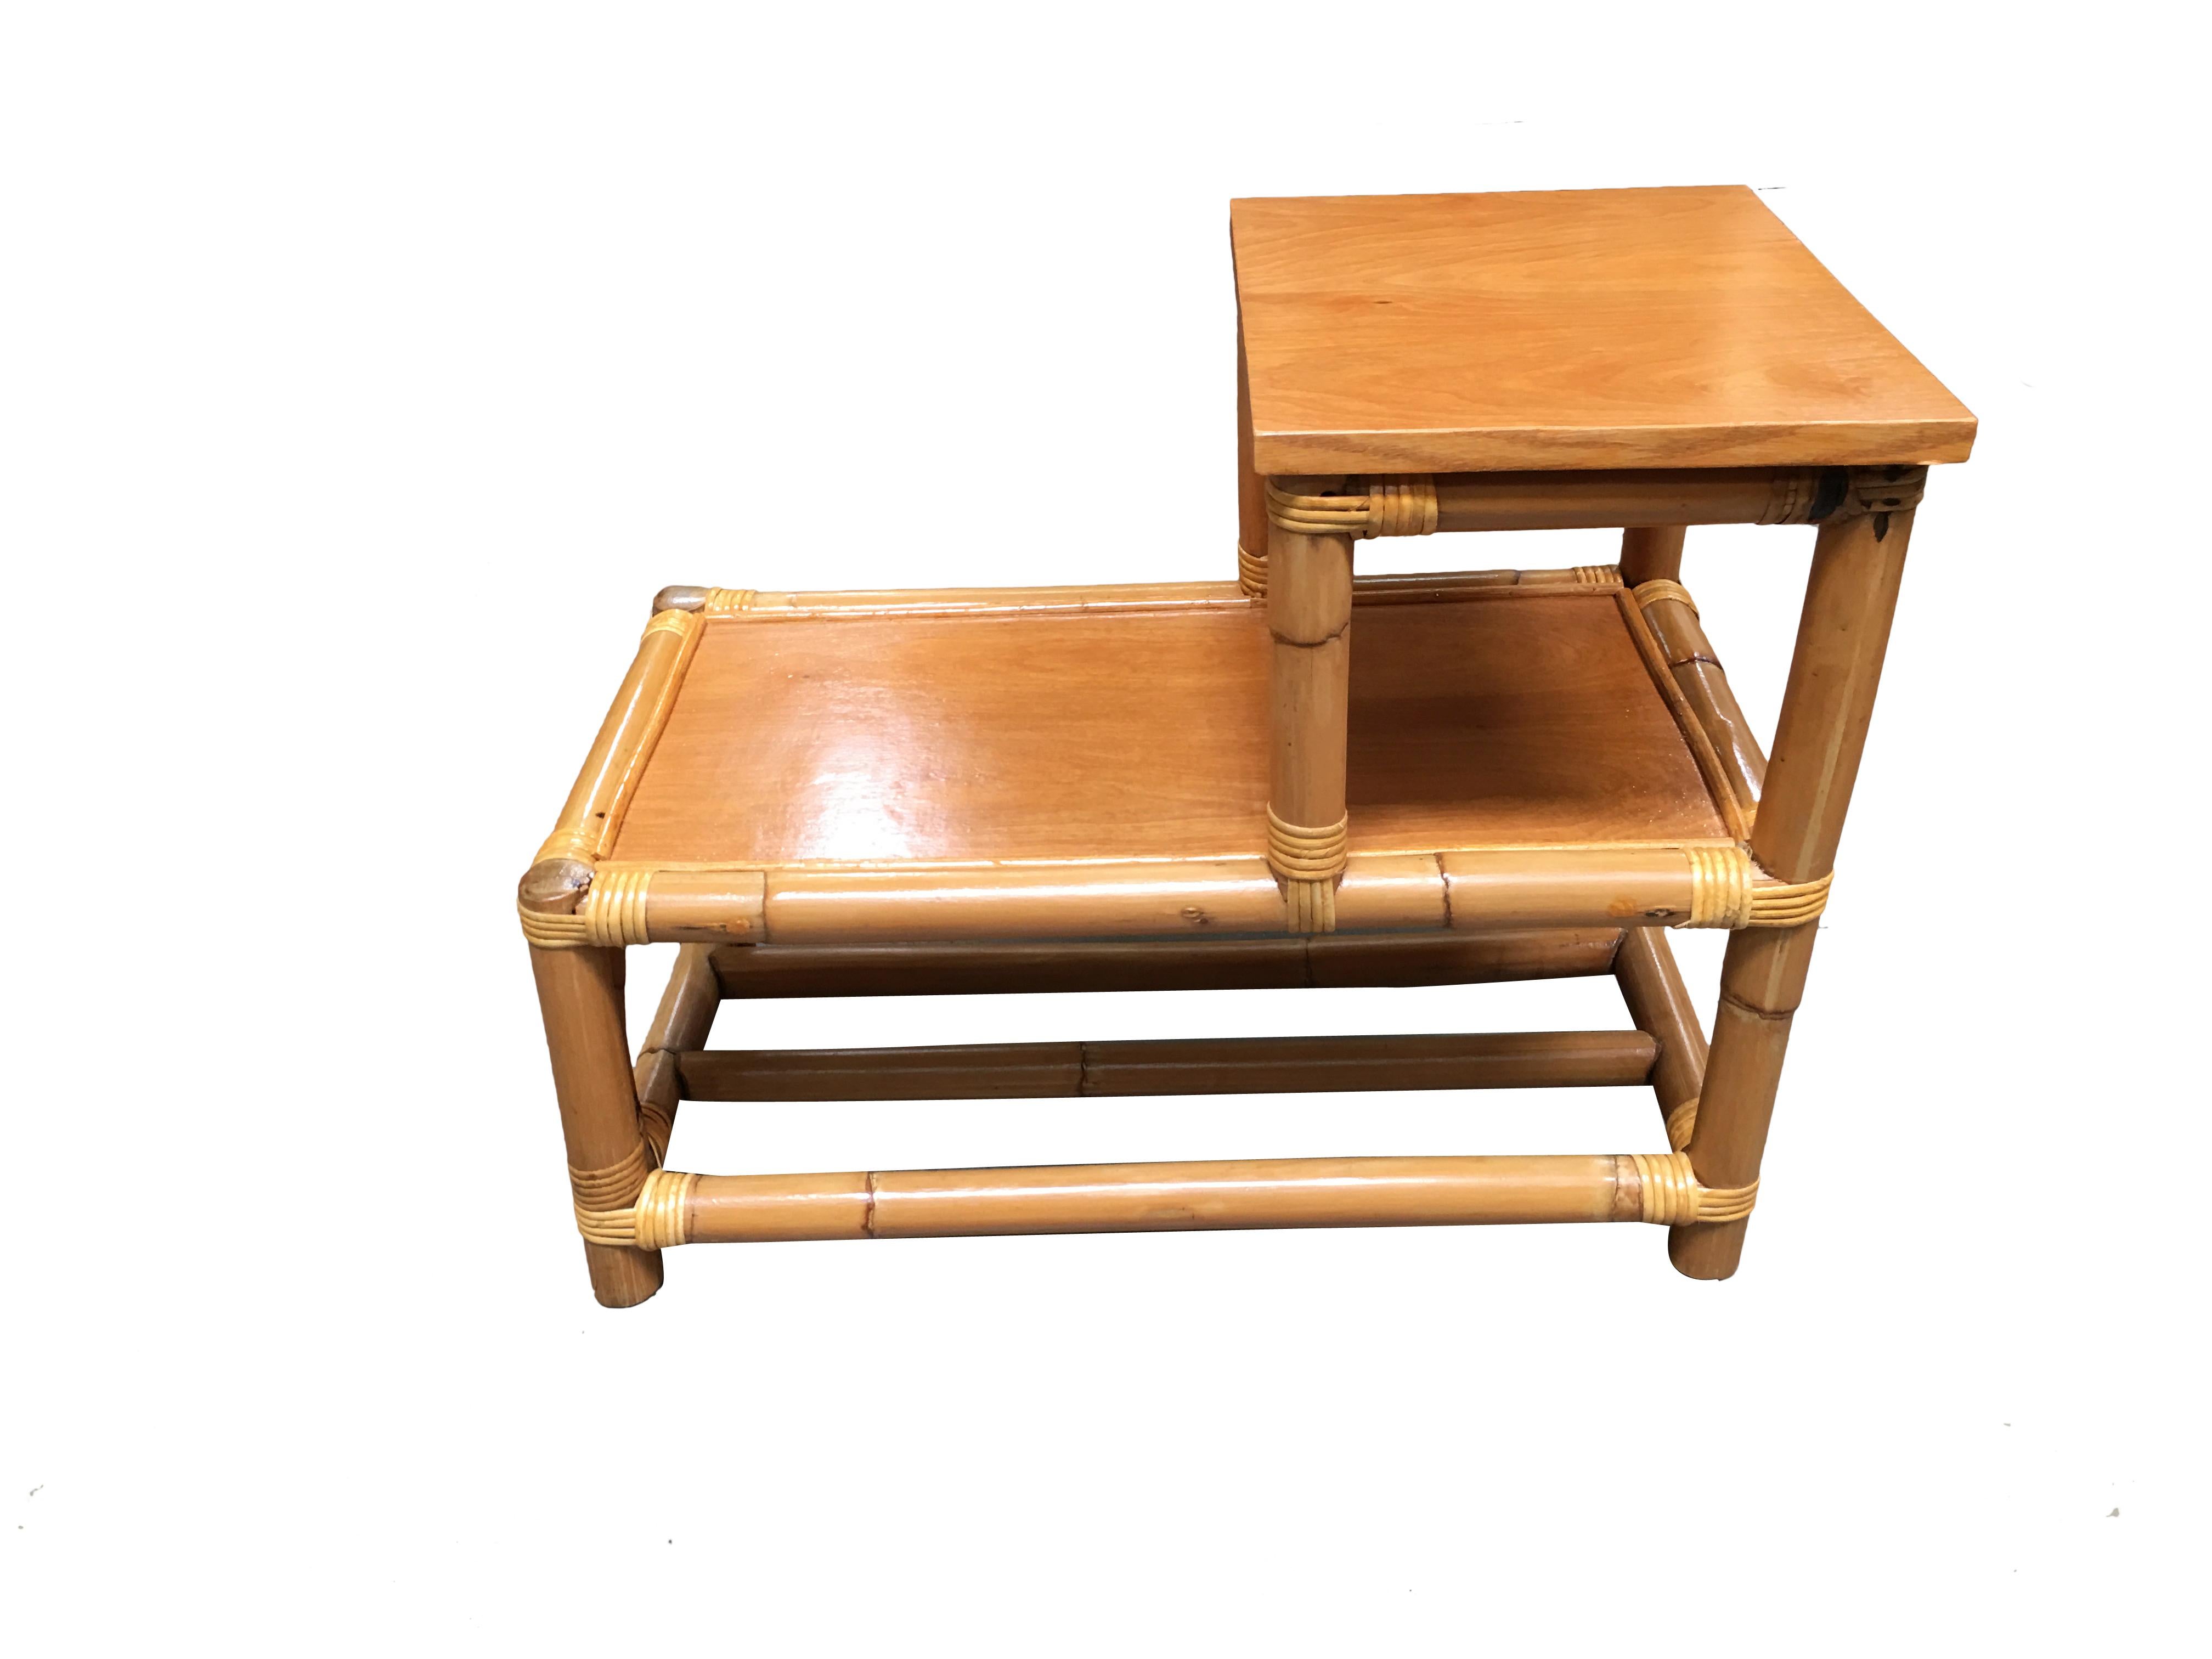 Beistelltisch aus Rattan mit zwei Etagen aus Holz, um 1950. Entworfen nach dem Vorbild von Paul Frankl.
Wir kaufen und verkaufen nur die besten und feinsten Rattanmöbel, die von den besten und bekanntesten amerikanischen Designern und Herstellern